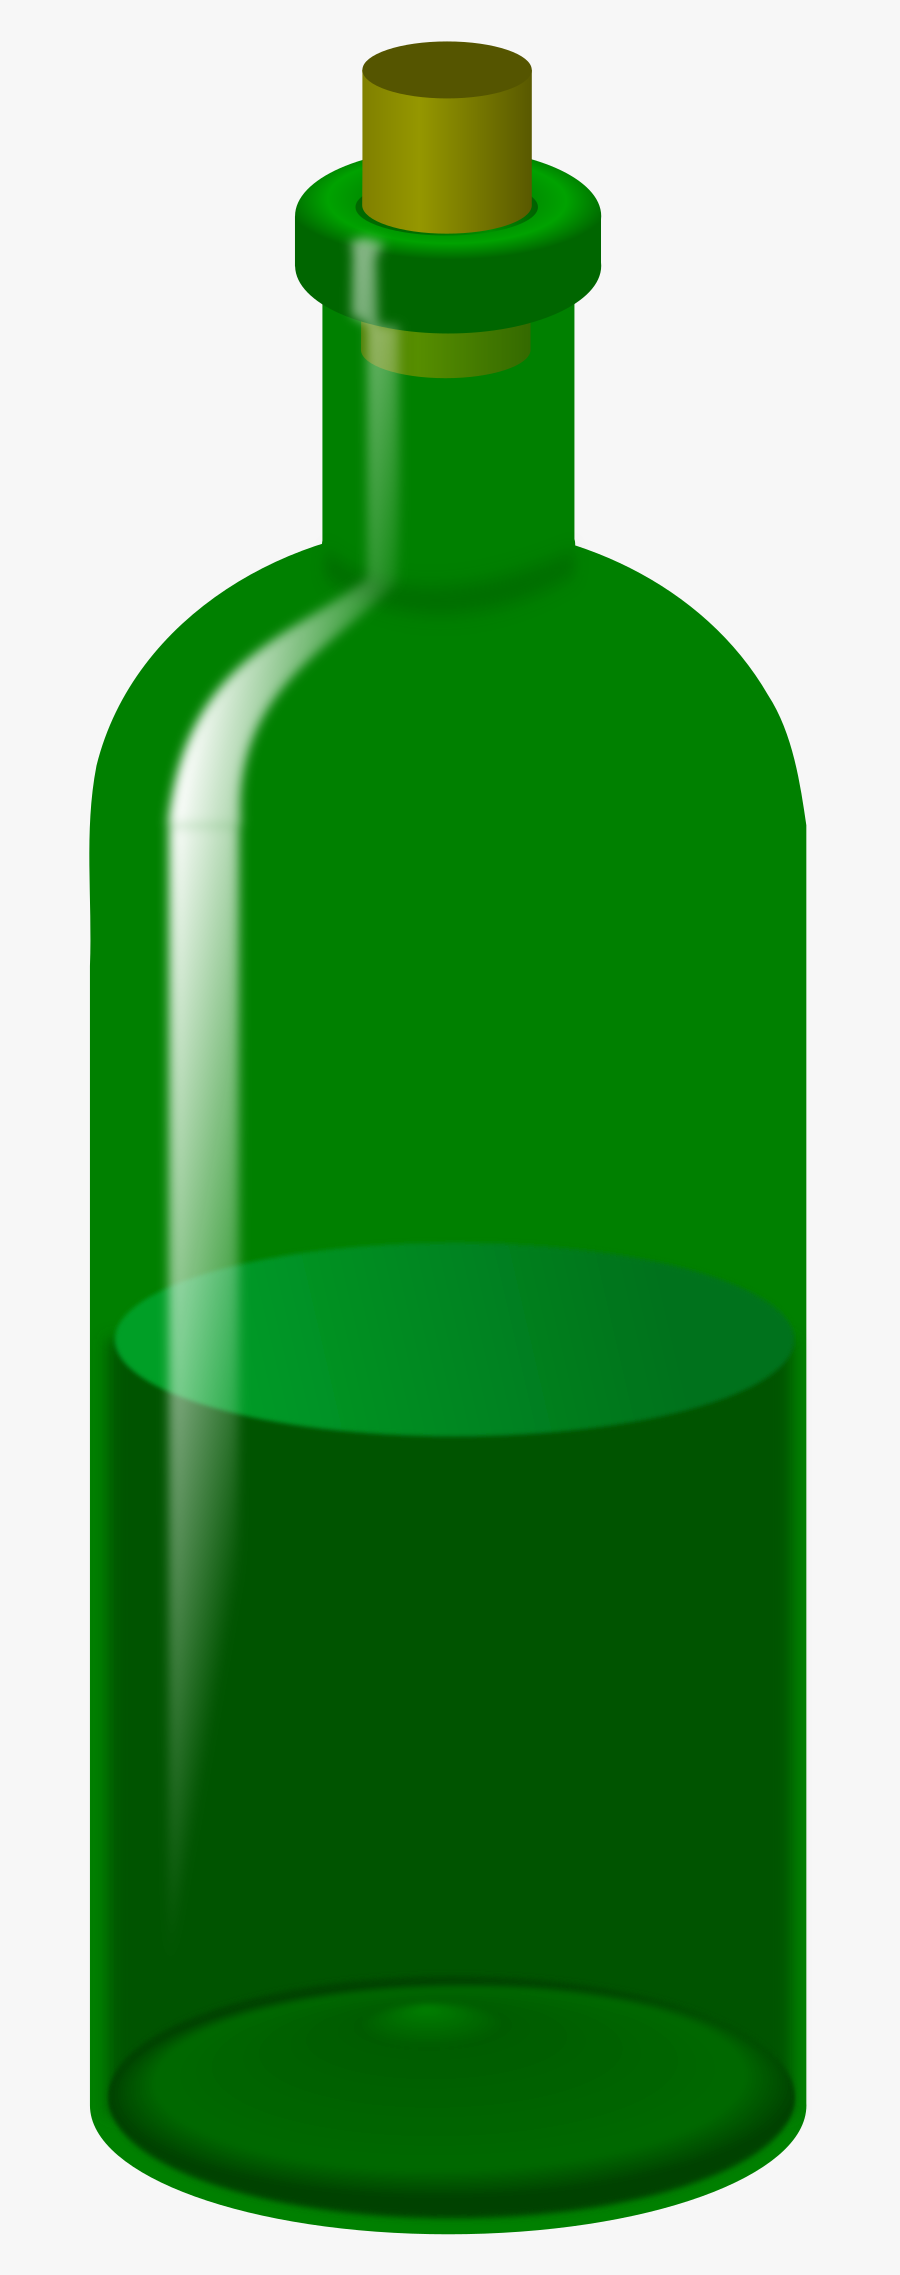 Wine Bottle Clipart - Glass Bottle, Transparent Clipart